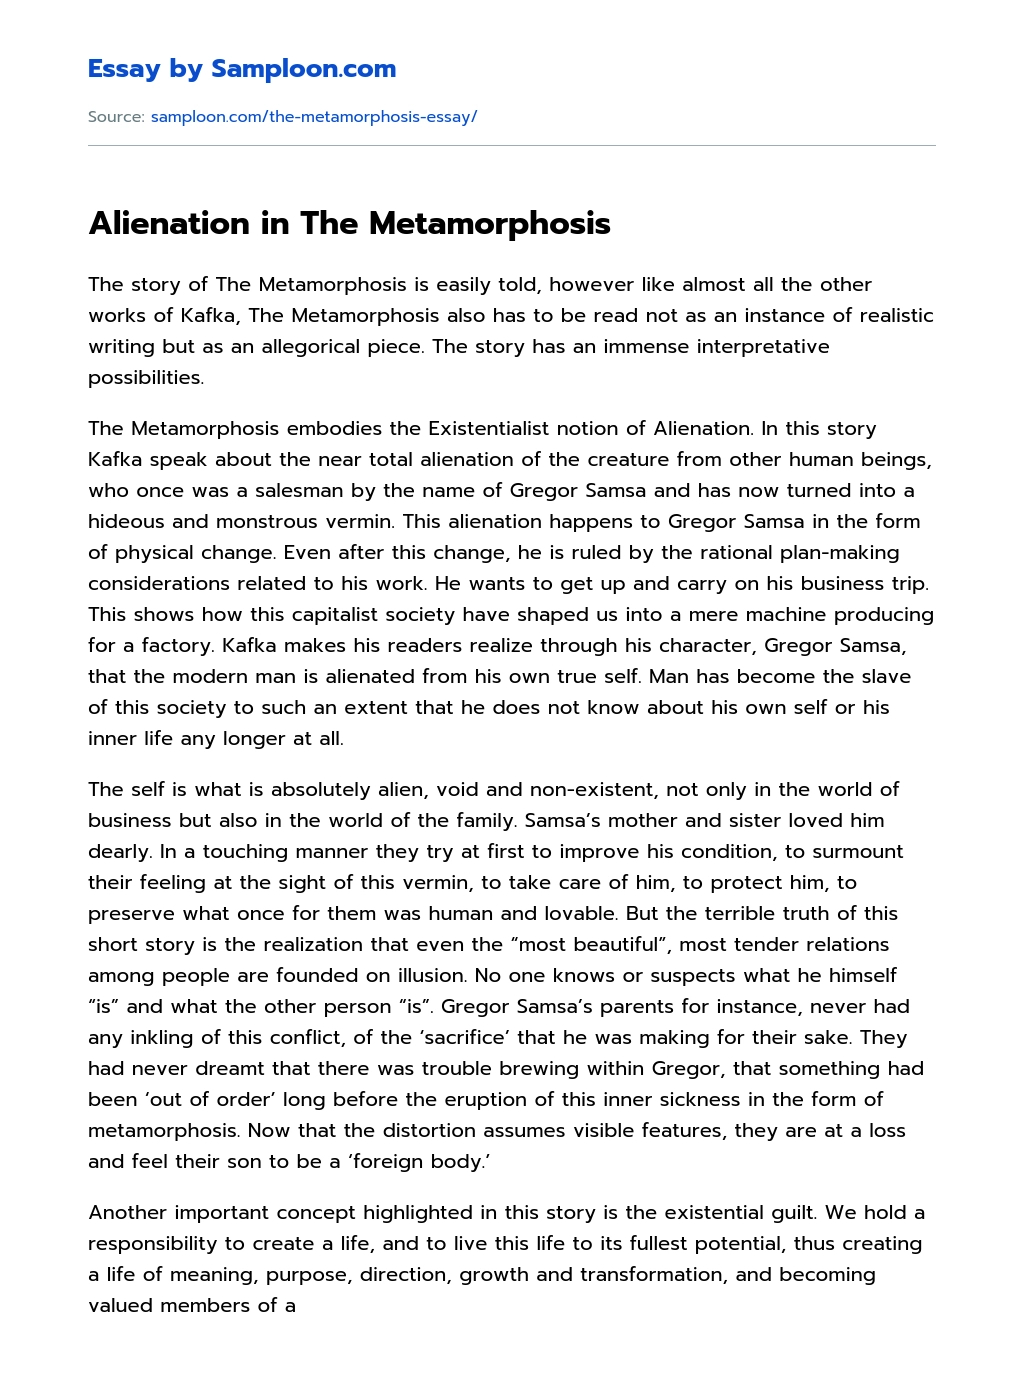 Alienation in The Metamorphosis essay